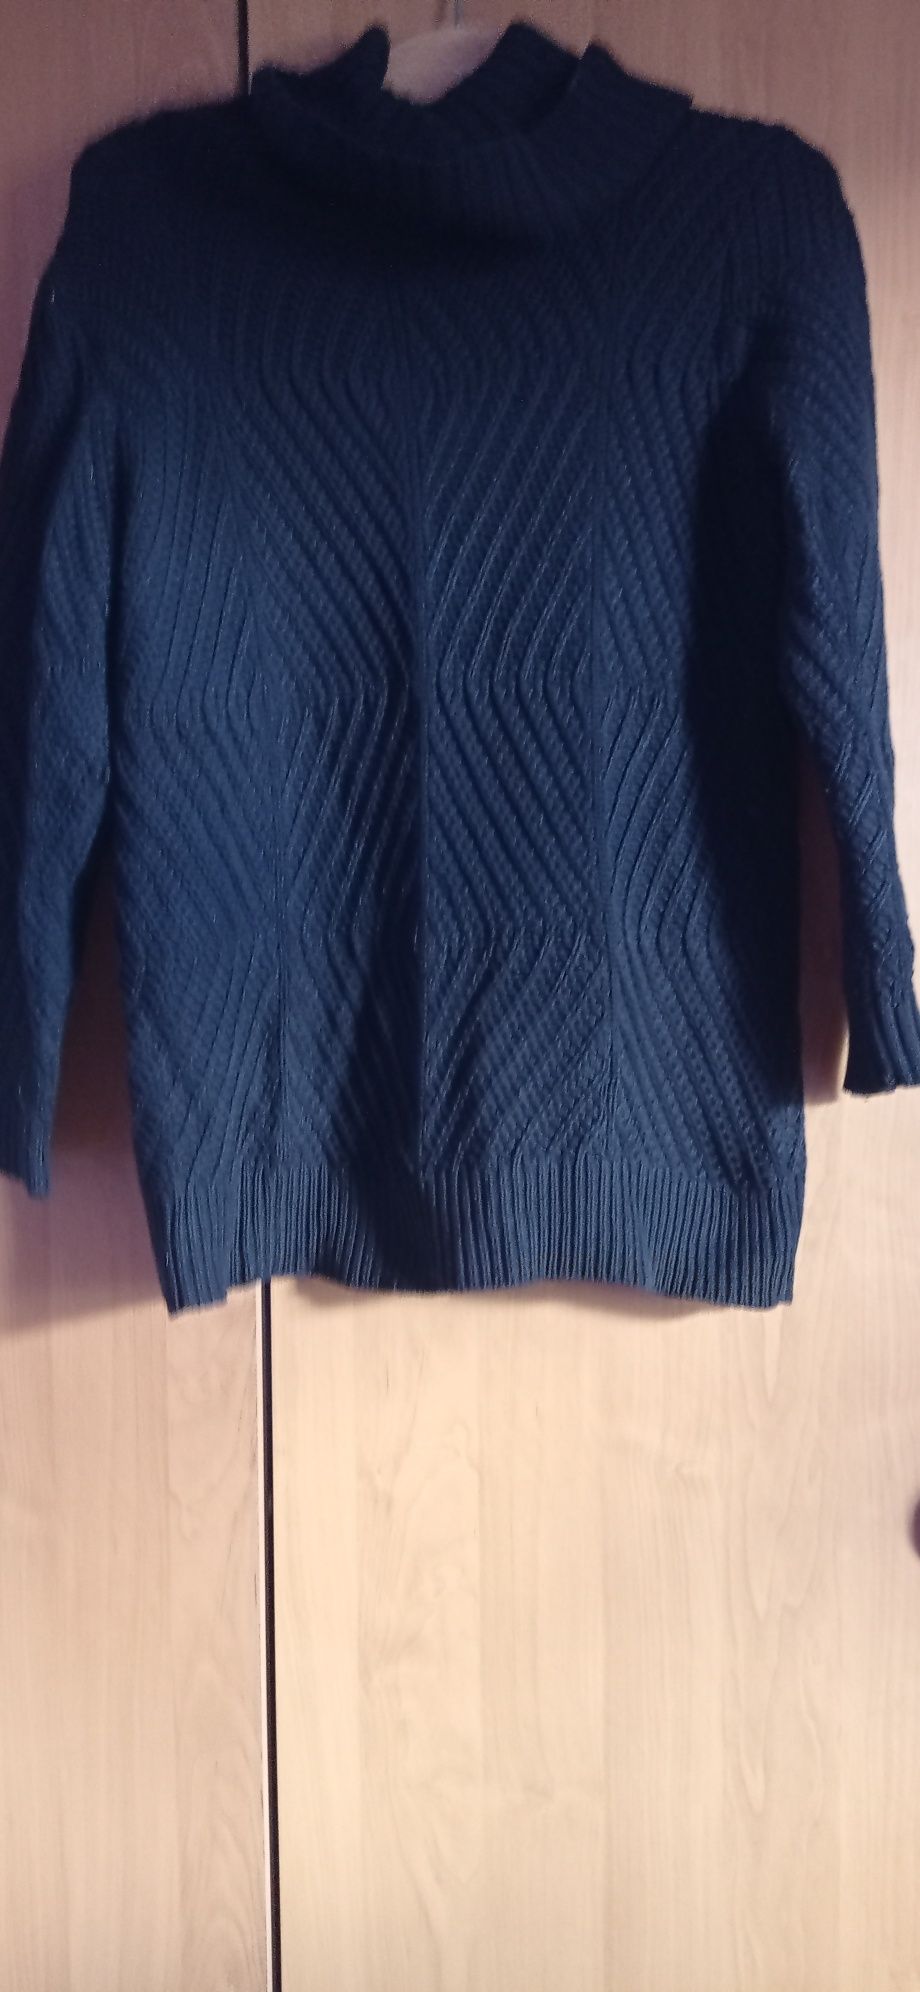 Sweterek czarny golf m/L